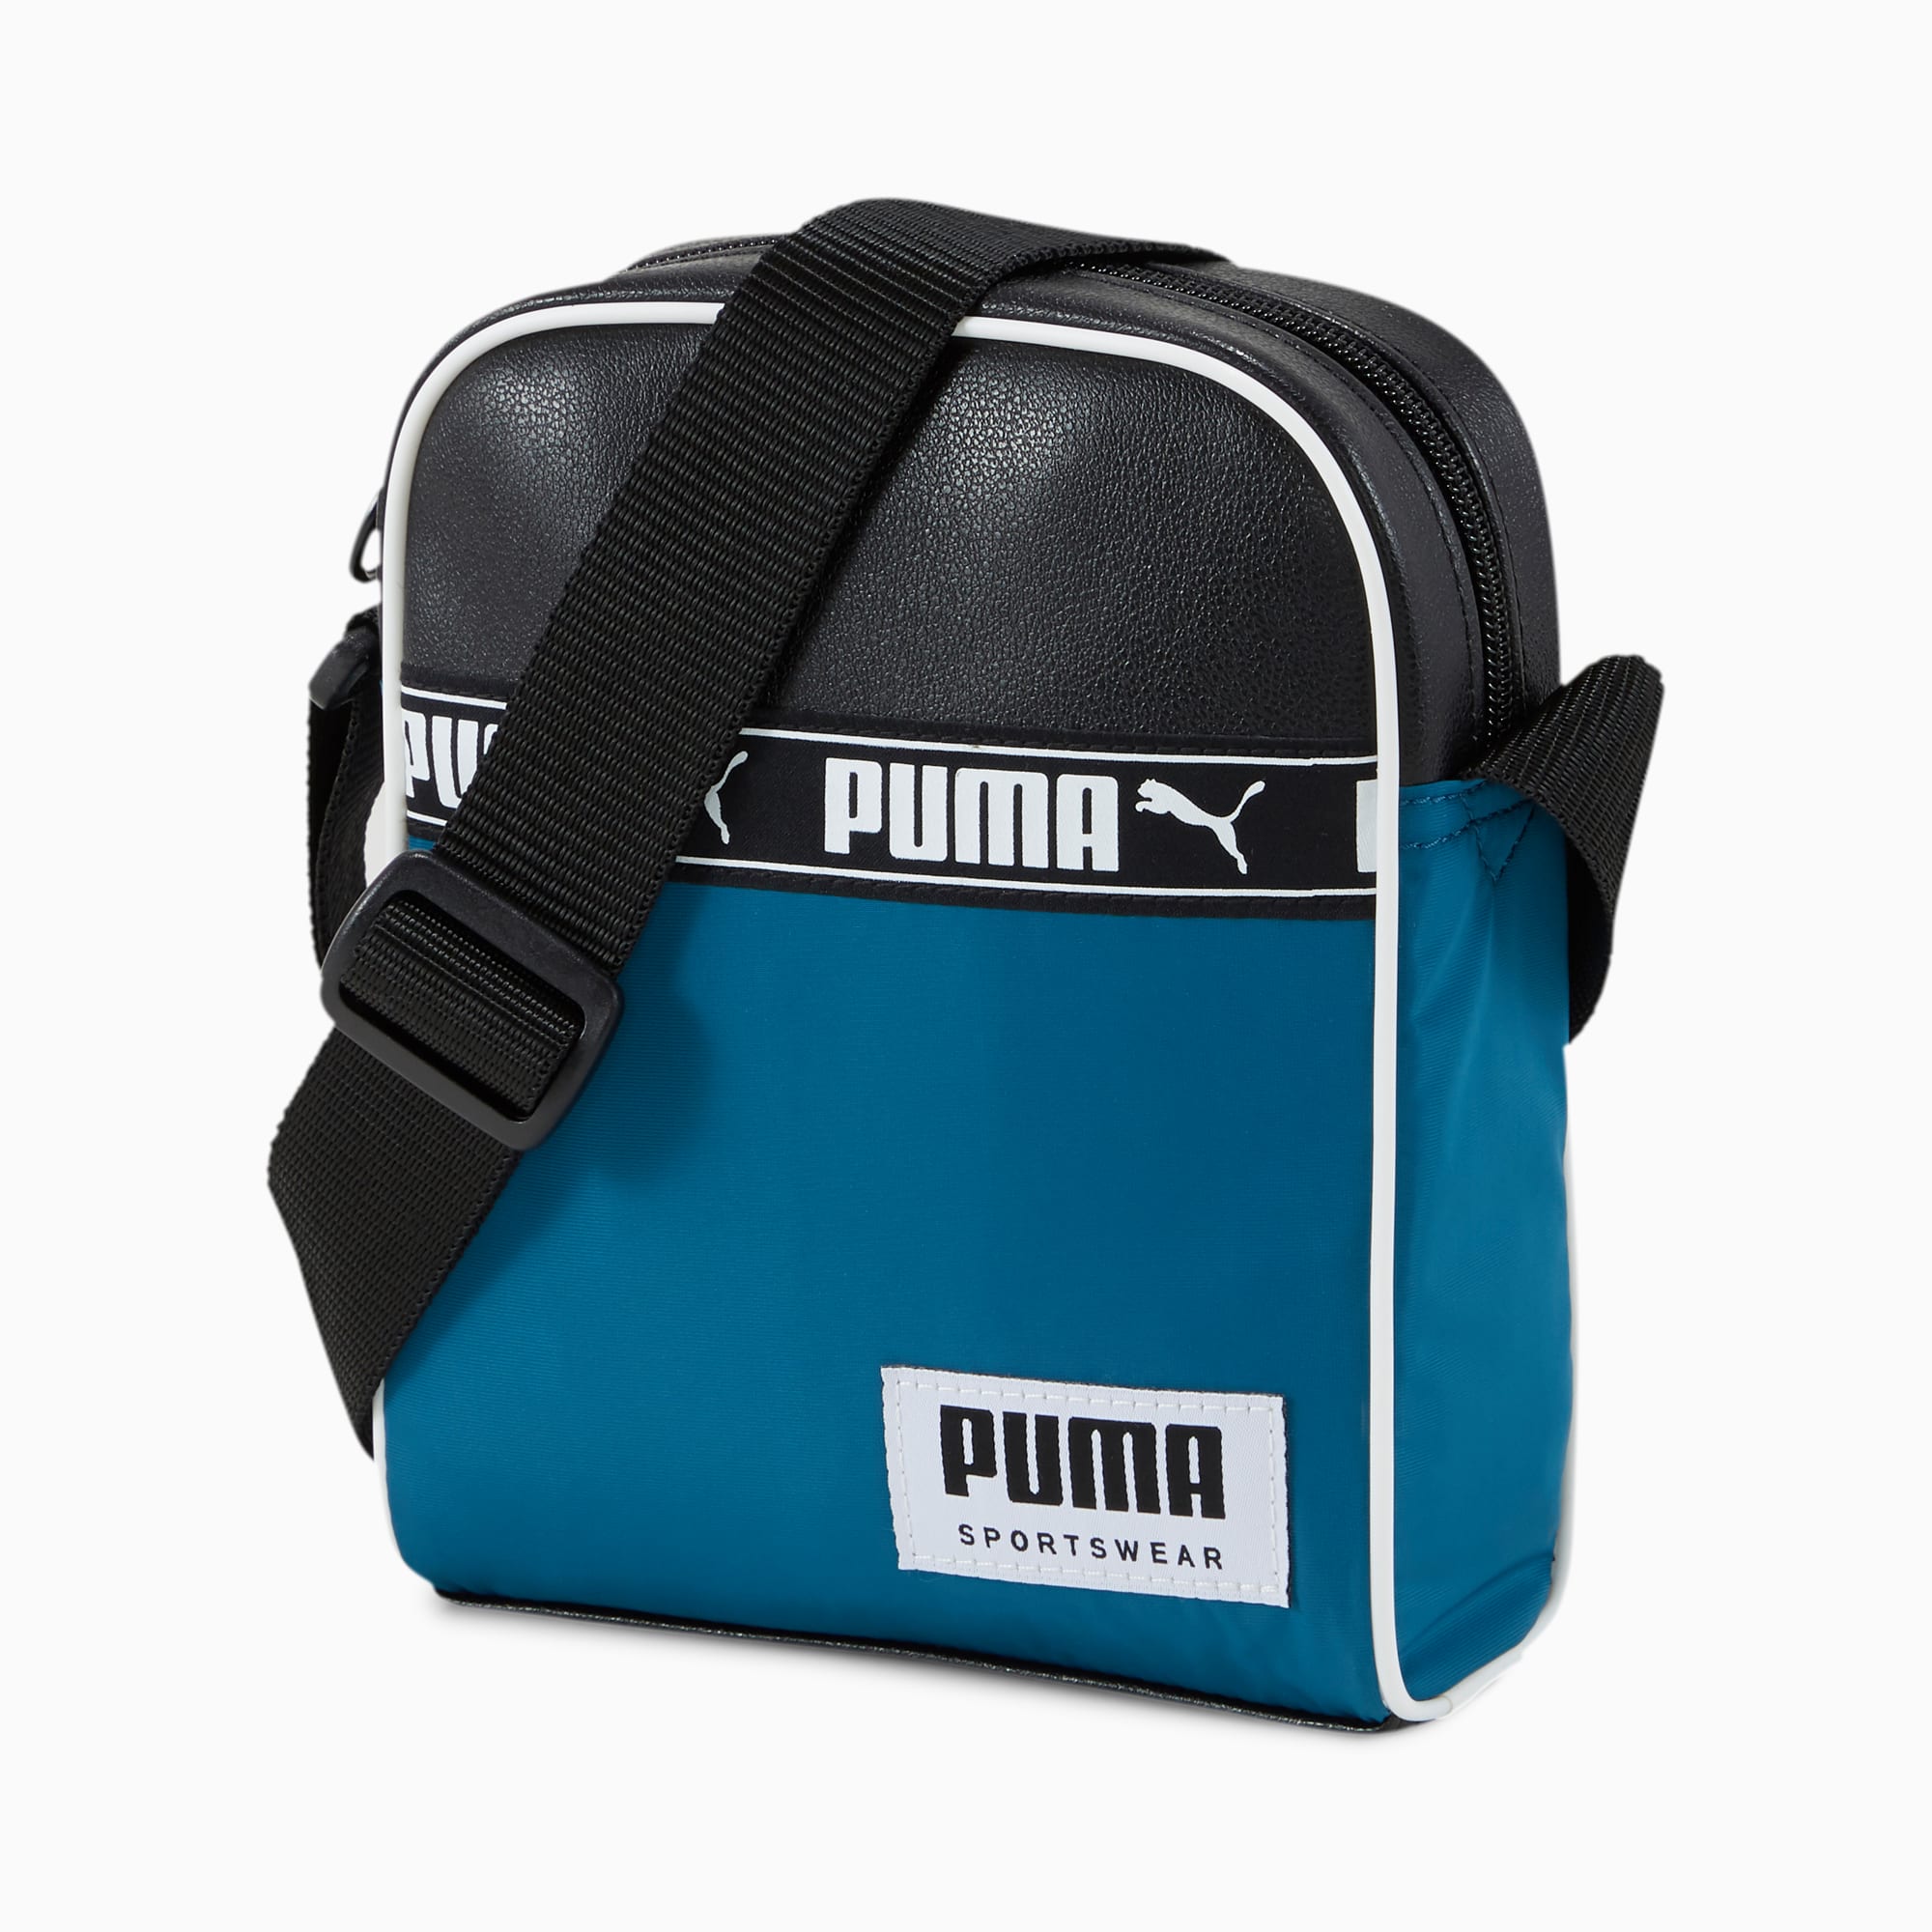 puma portable bag